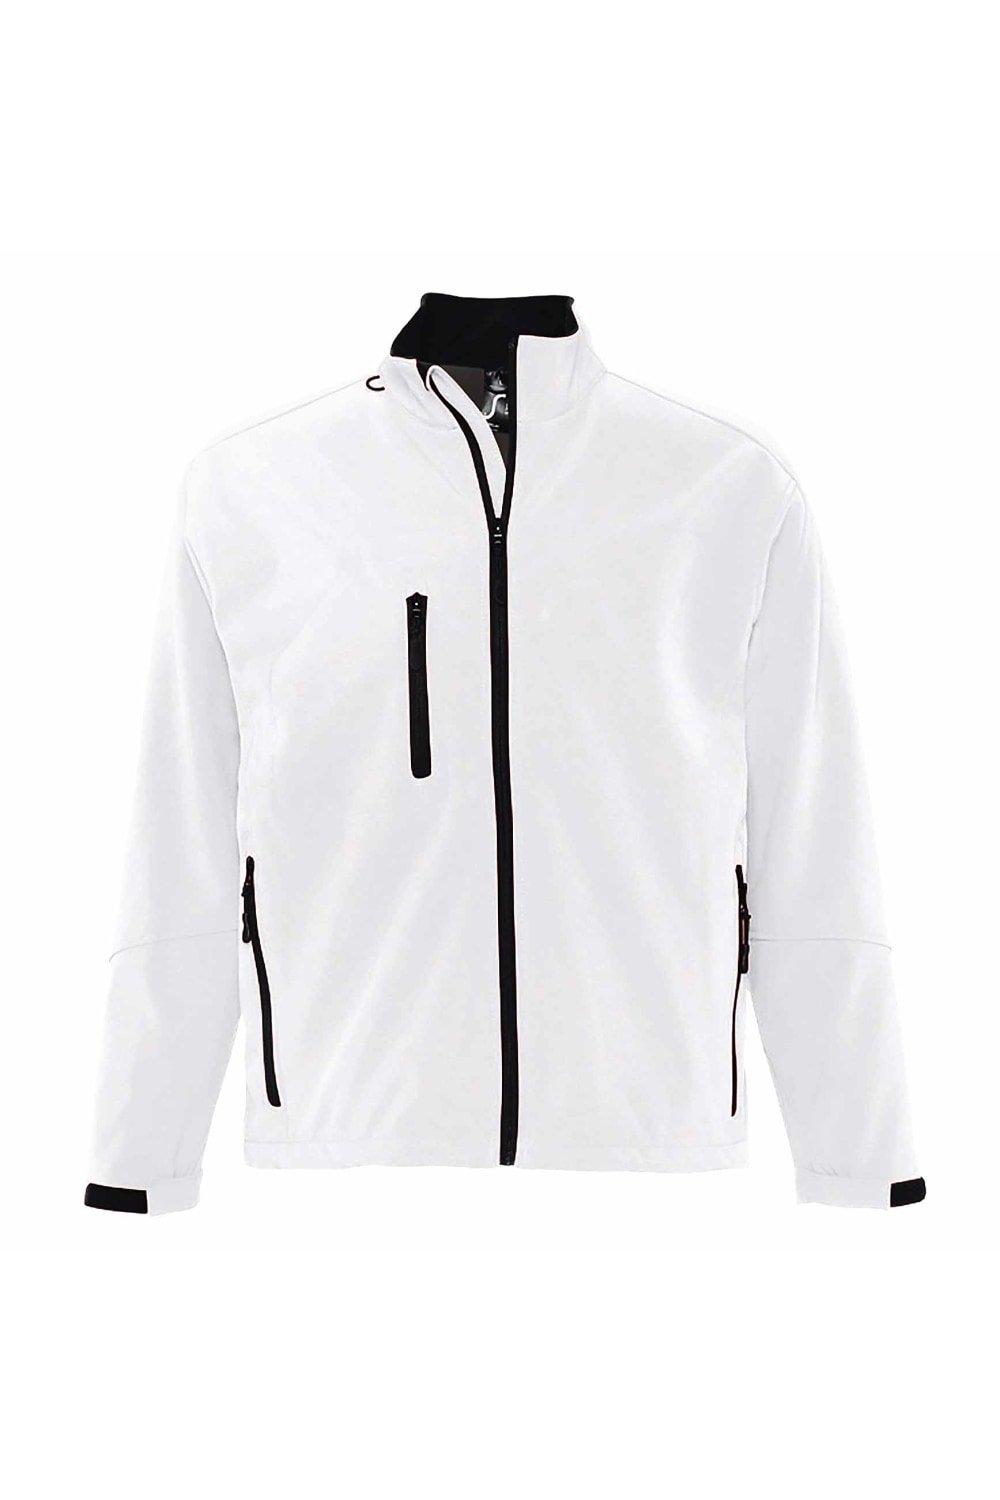 Куртка Relax Soft Shell (дышащая, ветрозащитная и водостойкая) SOL'S, белый